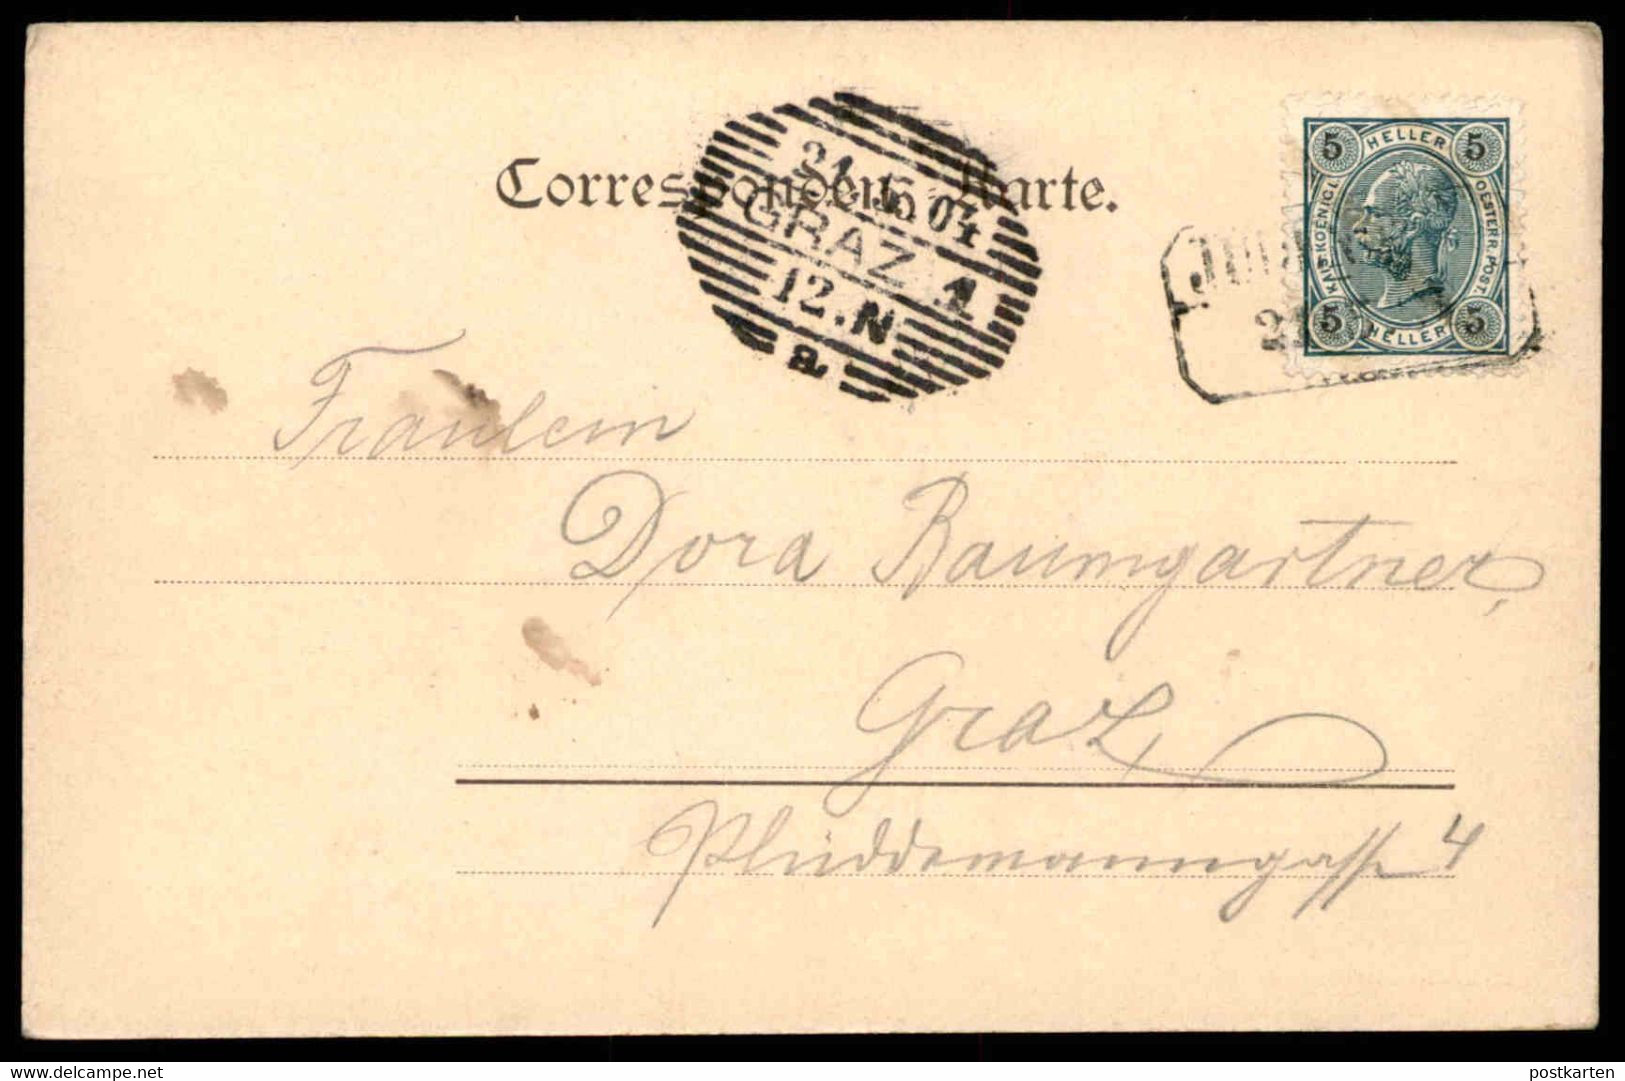 ALTE POSTKARTE GRATWEIN WEG KIRCHE 1904 Bei Graz Steiermark Österreich Austria Autriche Cpa Postcard AK Ansichtskarte - Gratwein